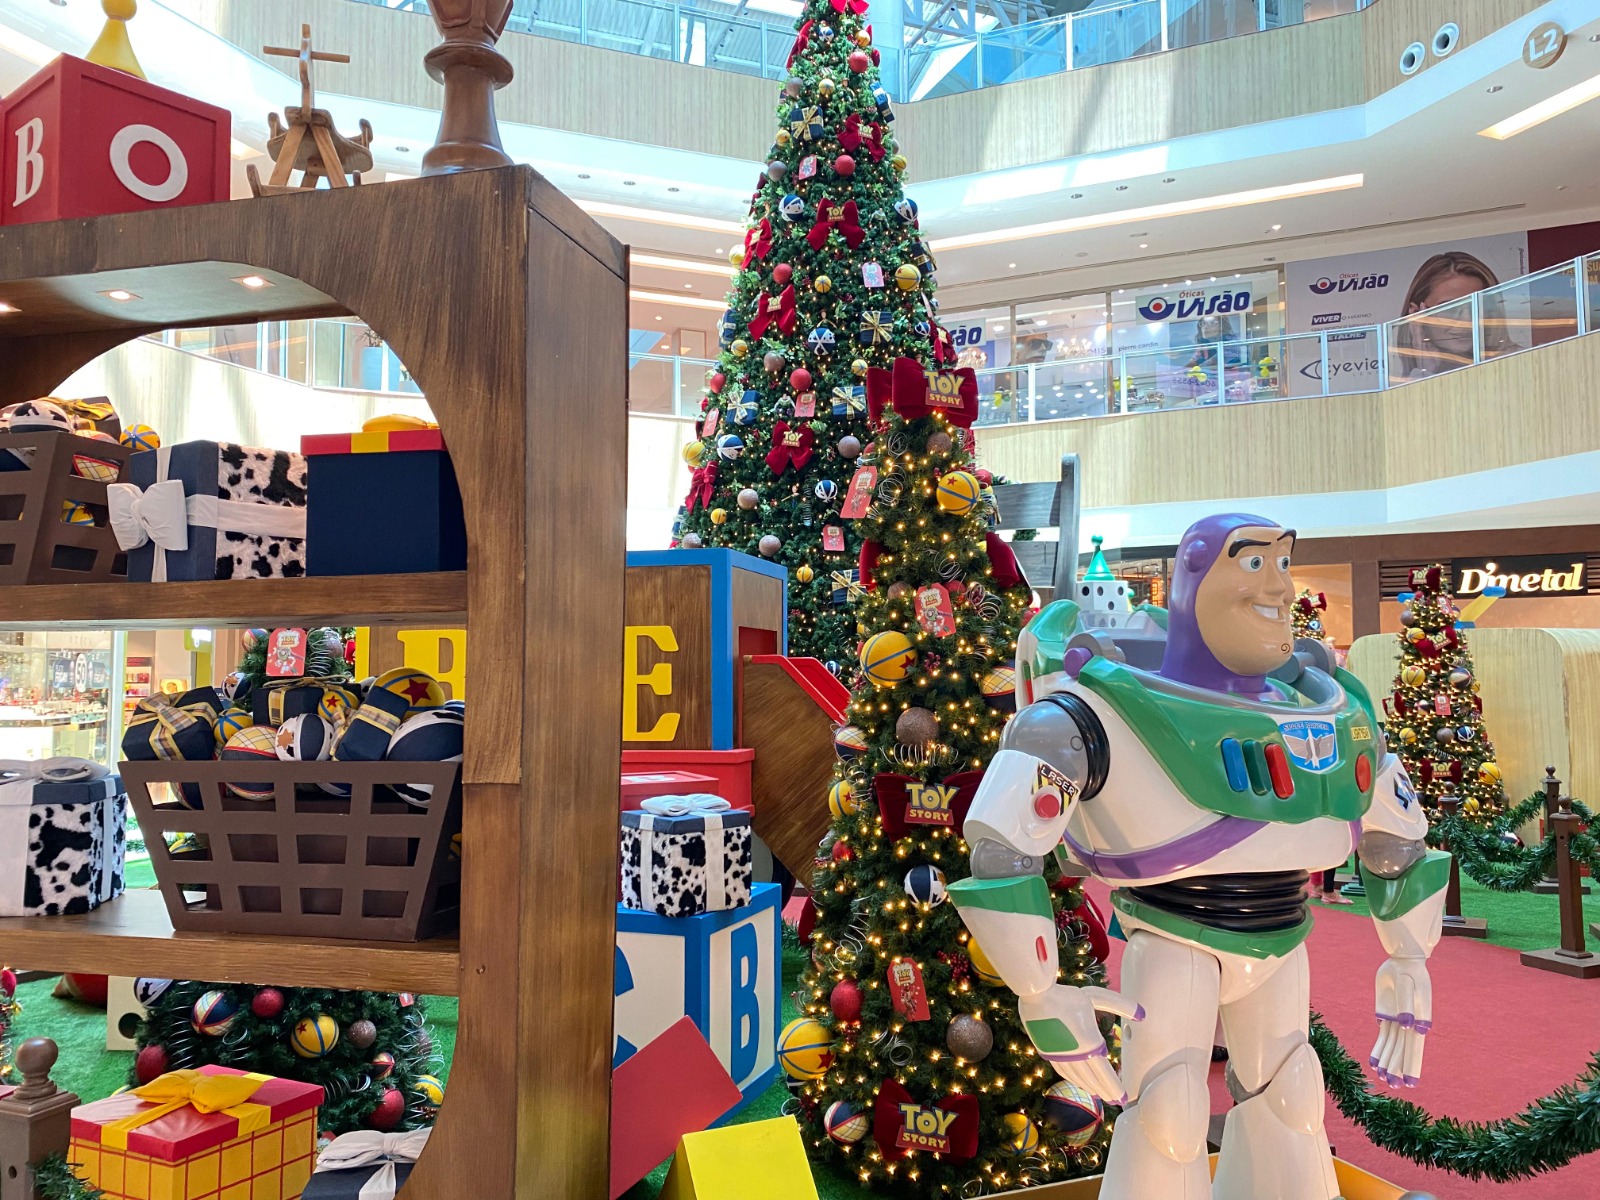 Decorações exclusivas de Natal com tema Toy Story chegam aos shoppings RioMar em Fortaleza